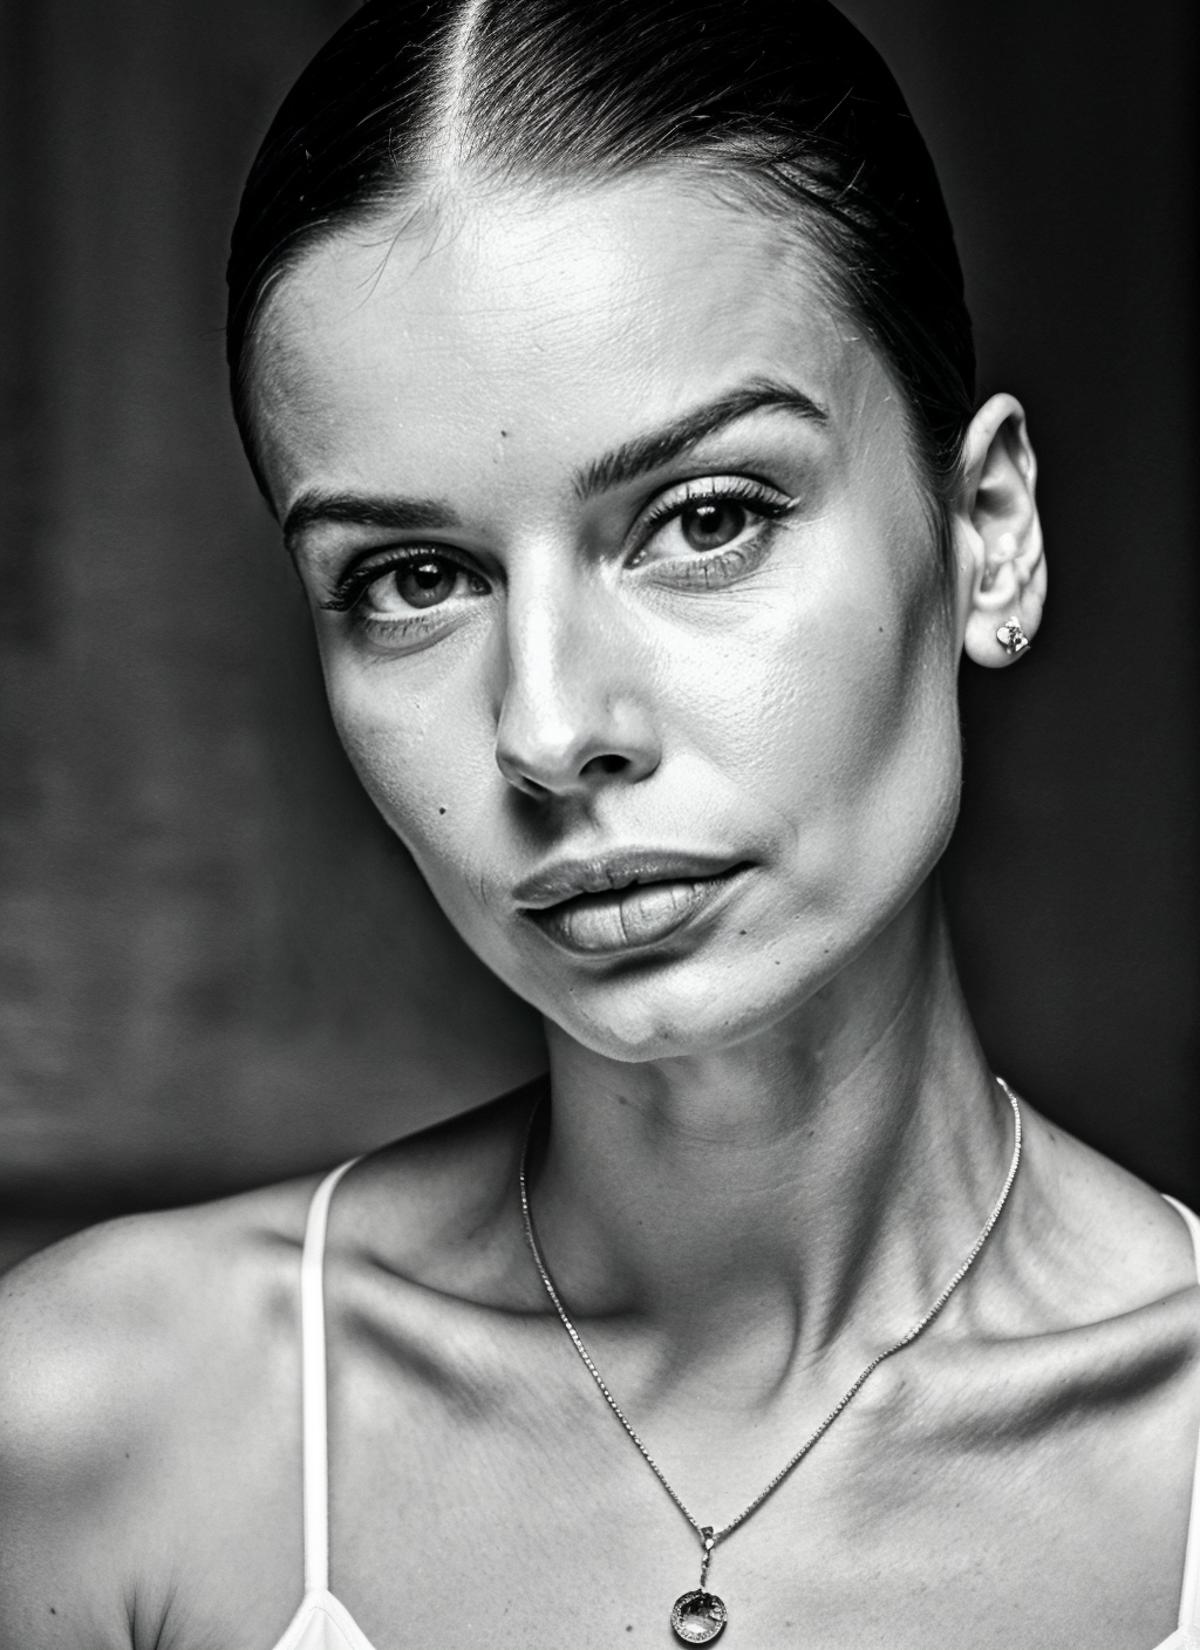 Aleksandra Sawicka image by malcolmrey